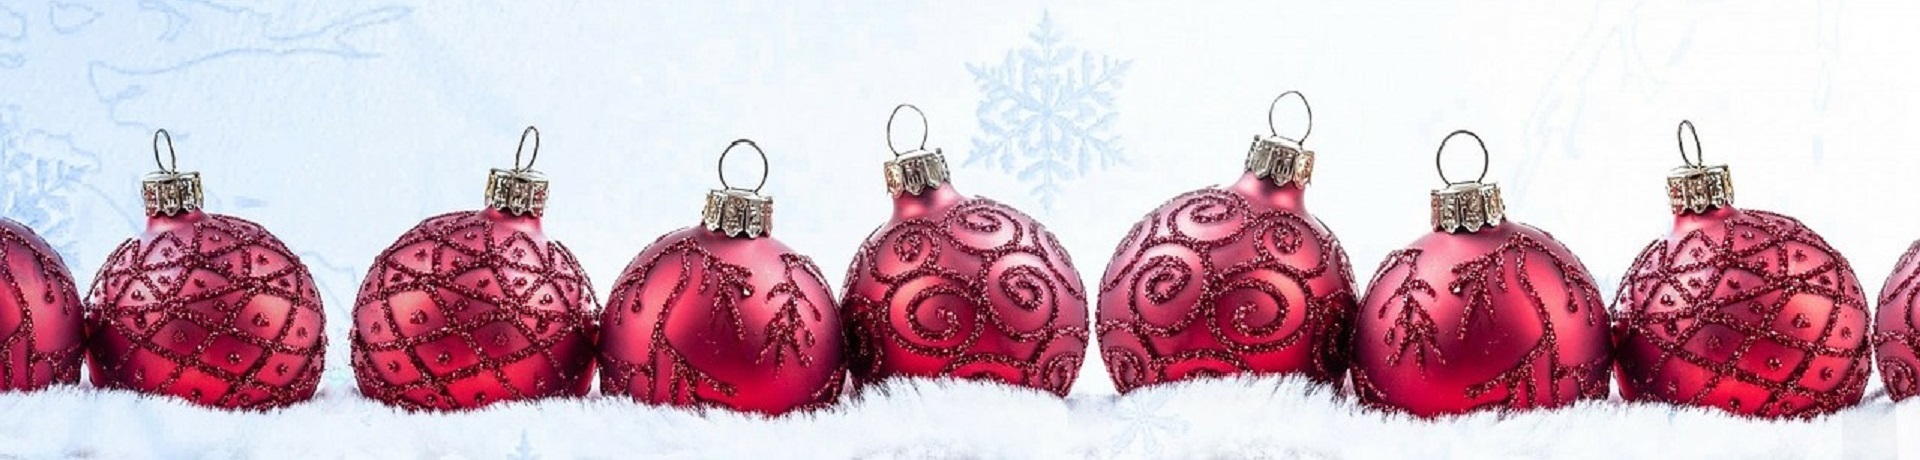 VÁNOČNÍ OZDOBY pro váš stromeček, které oživí vánoční atmosféru.